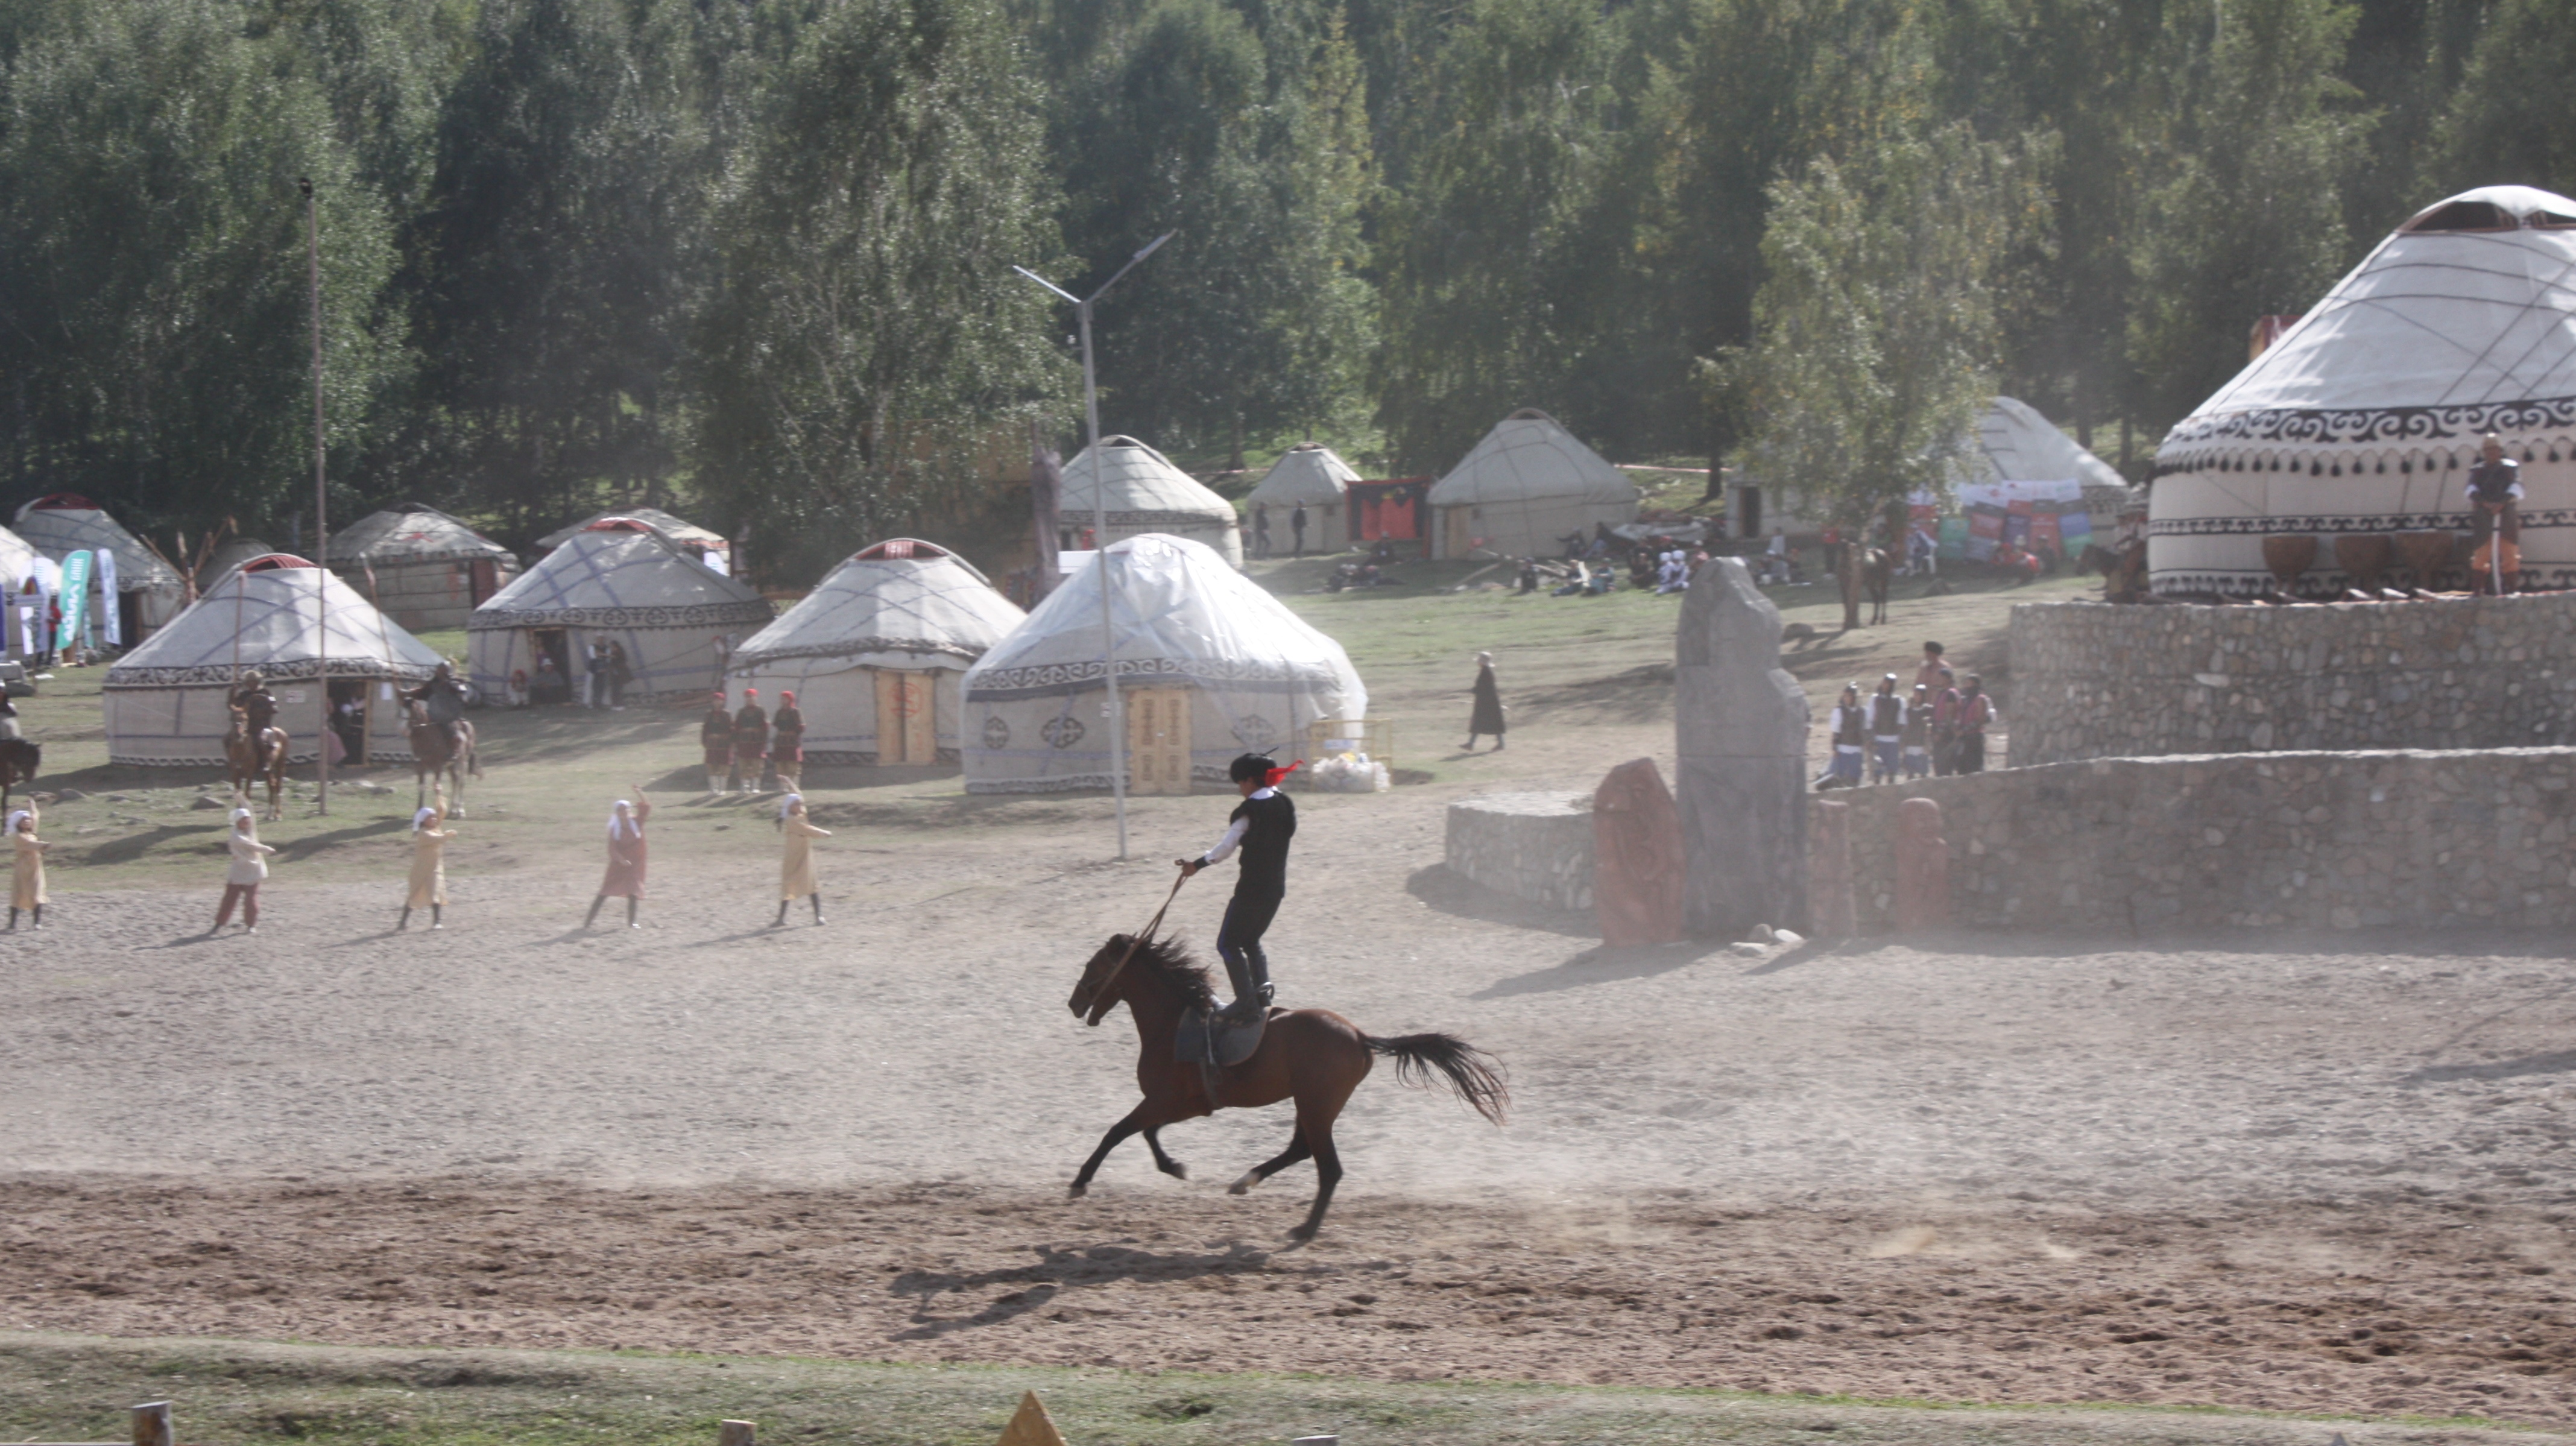 Борьба за тушу козла и стрельба из традиционного лука: как прошли Всемирные игры кочевников в Кыргызстане